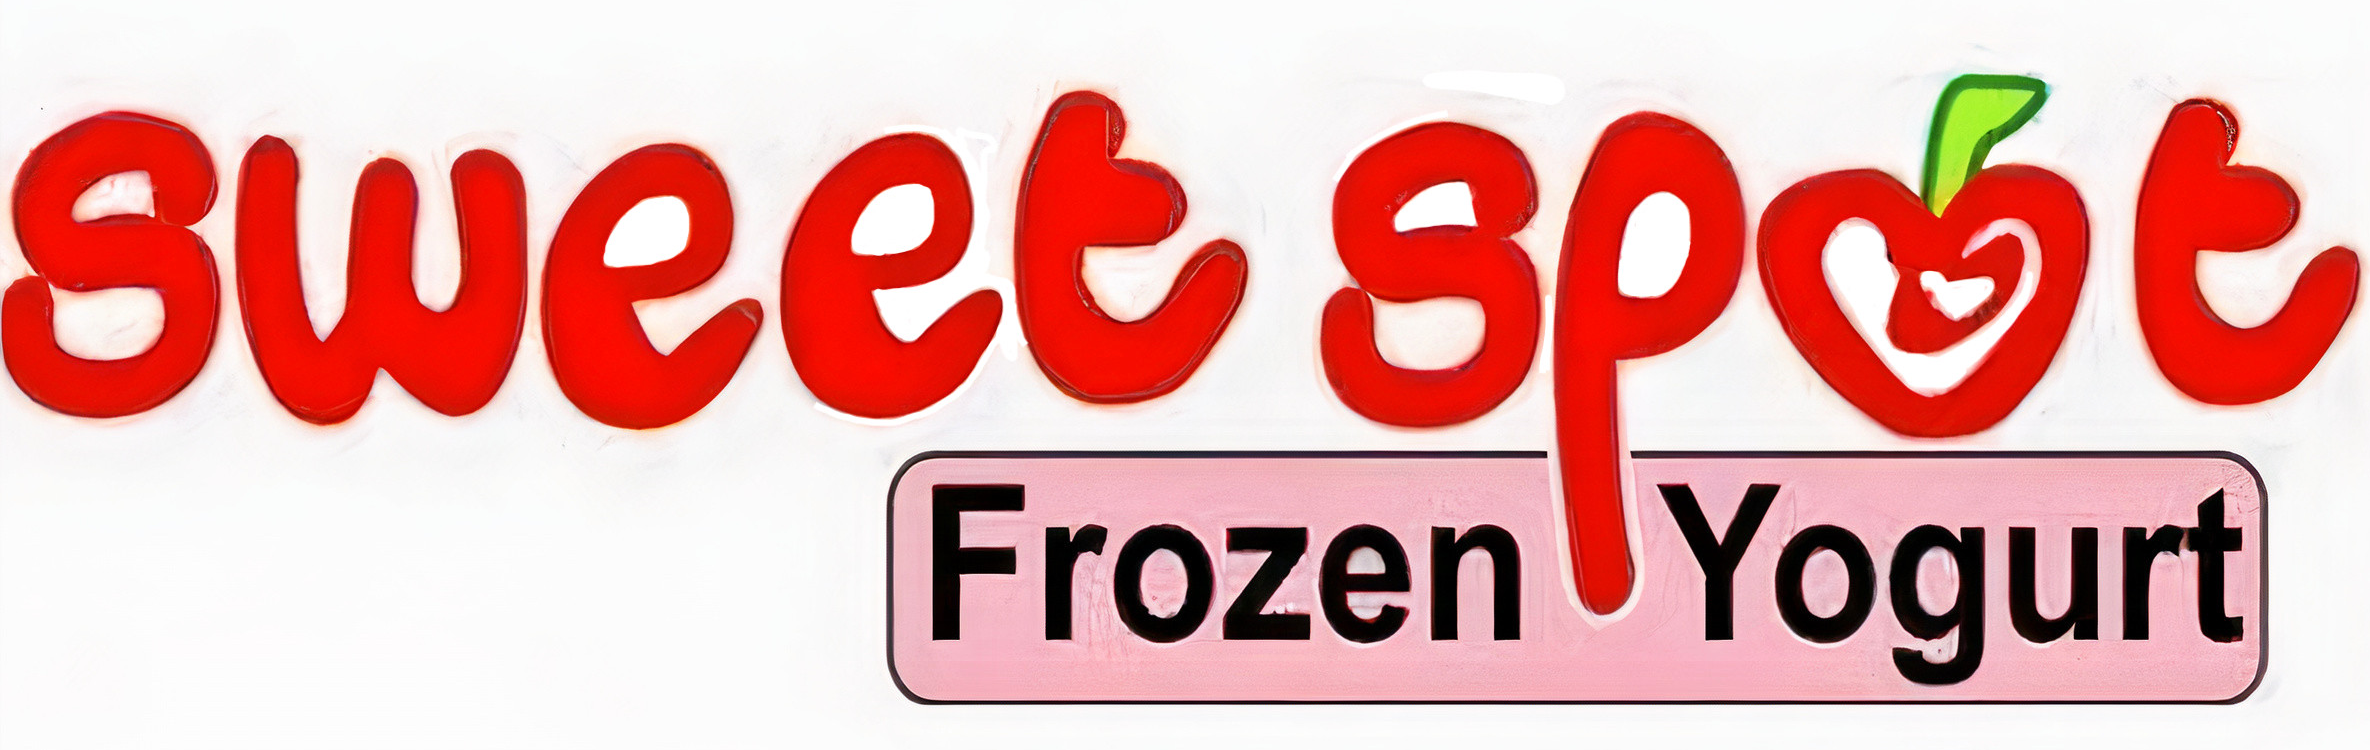 Sweet Spot Frozen Yogurt